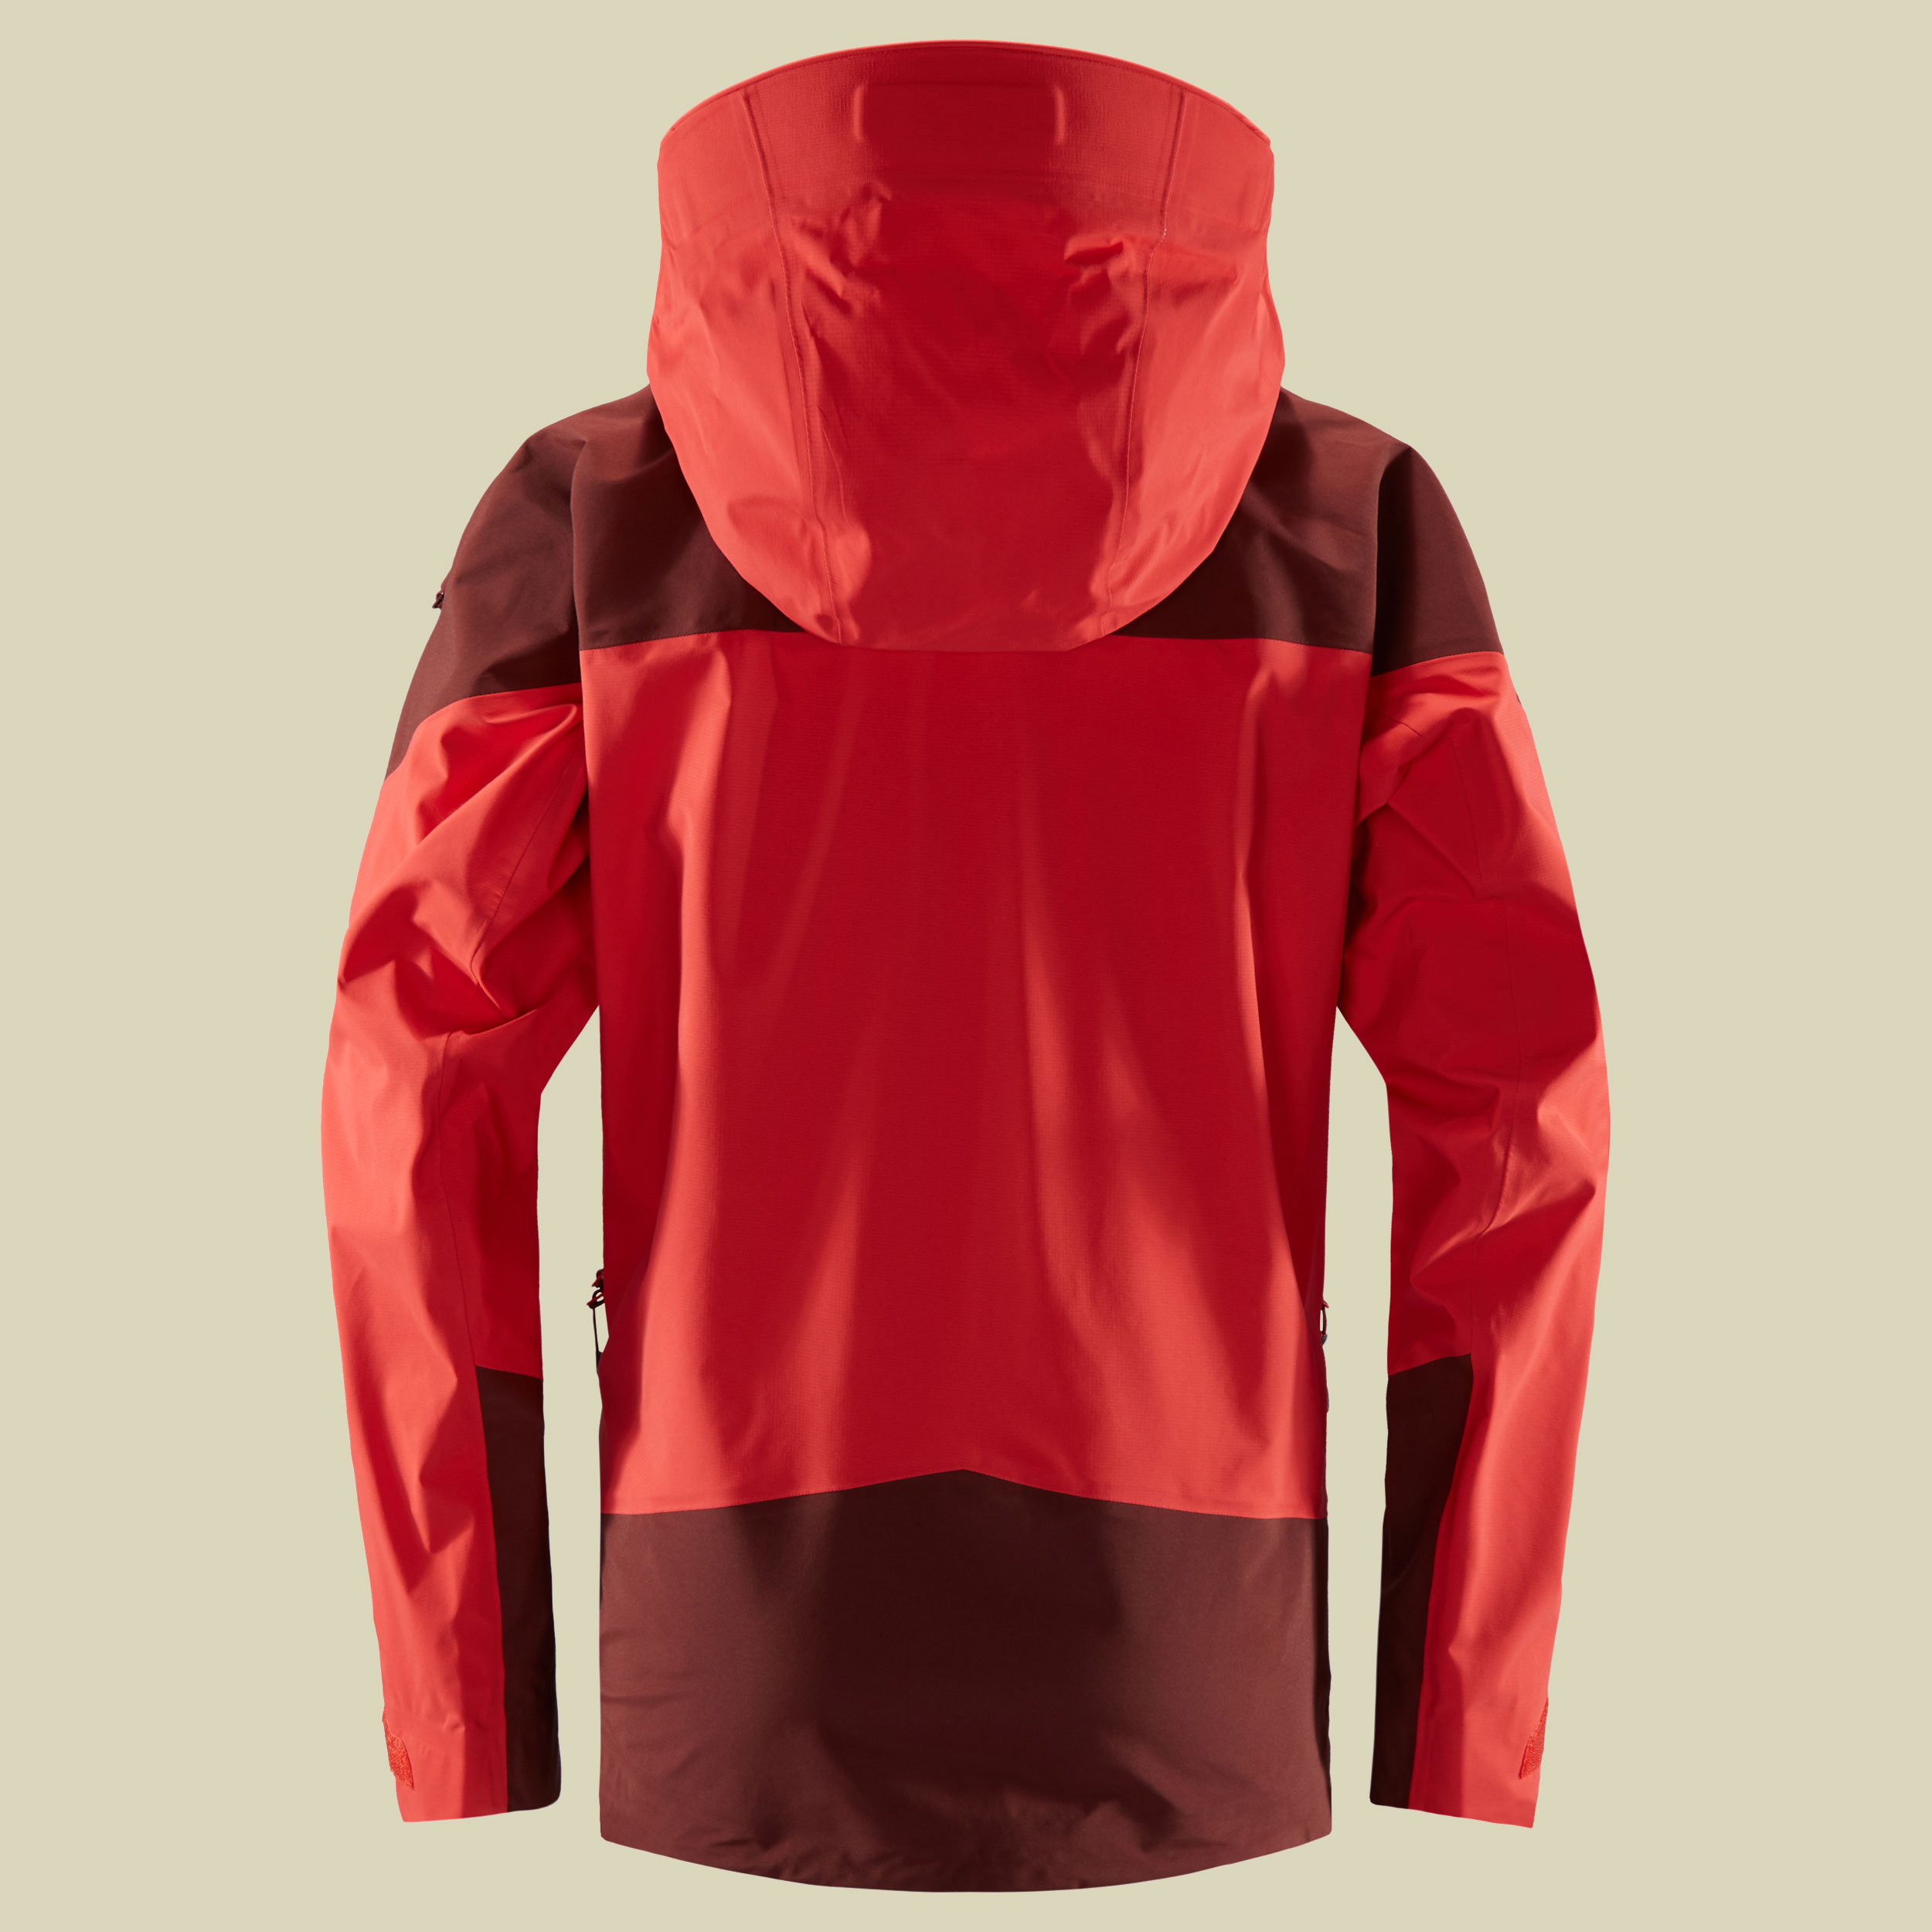 Roc Spire Jacket Women Größe M Farbe hibiscus red/maroon red